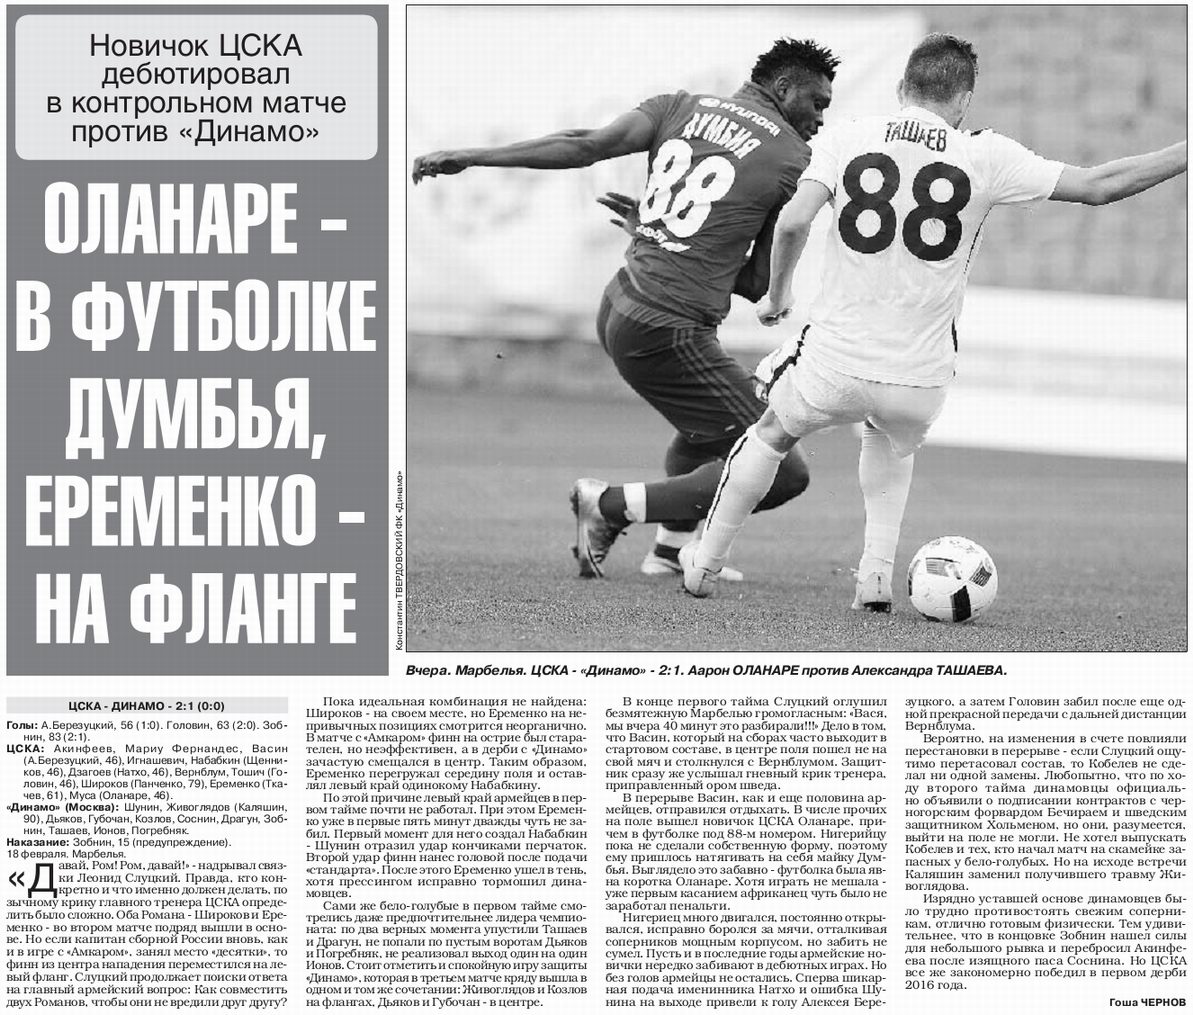 2016-02-18.DinamoM-CSKA